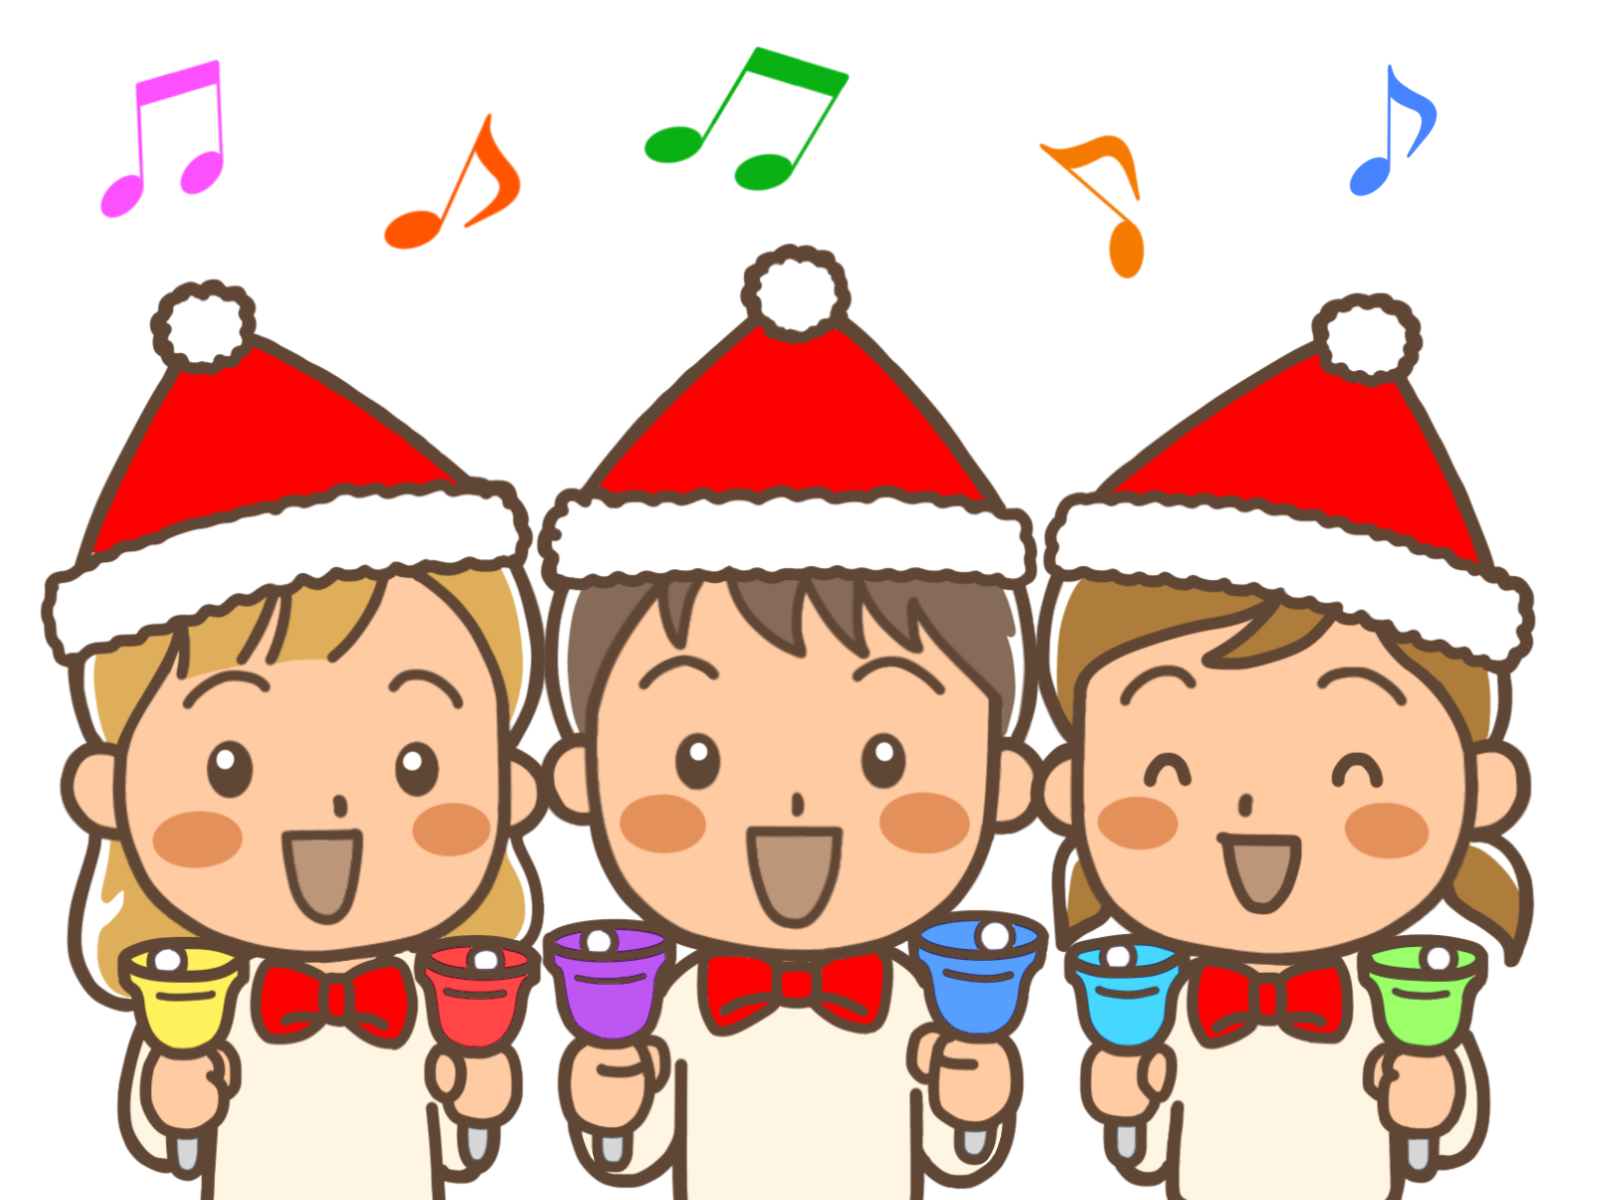 高齢者施設でクリスマス会のレクにやったらウケる歌やゲームは 本当に役立つおタカラ情報クラブ